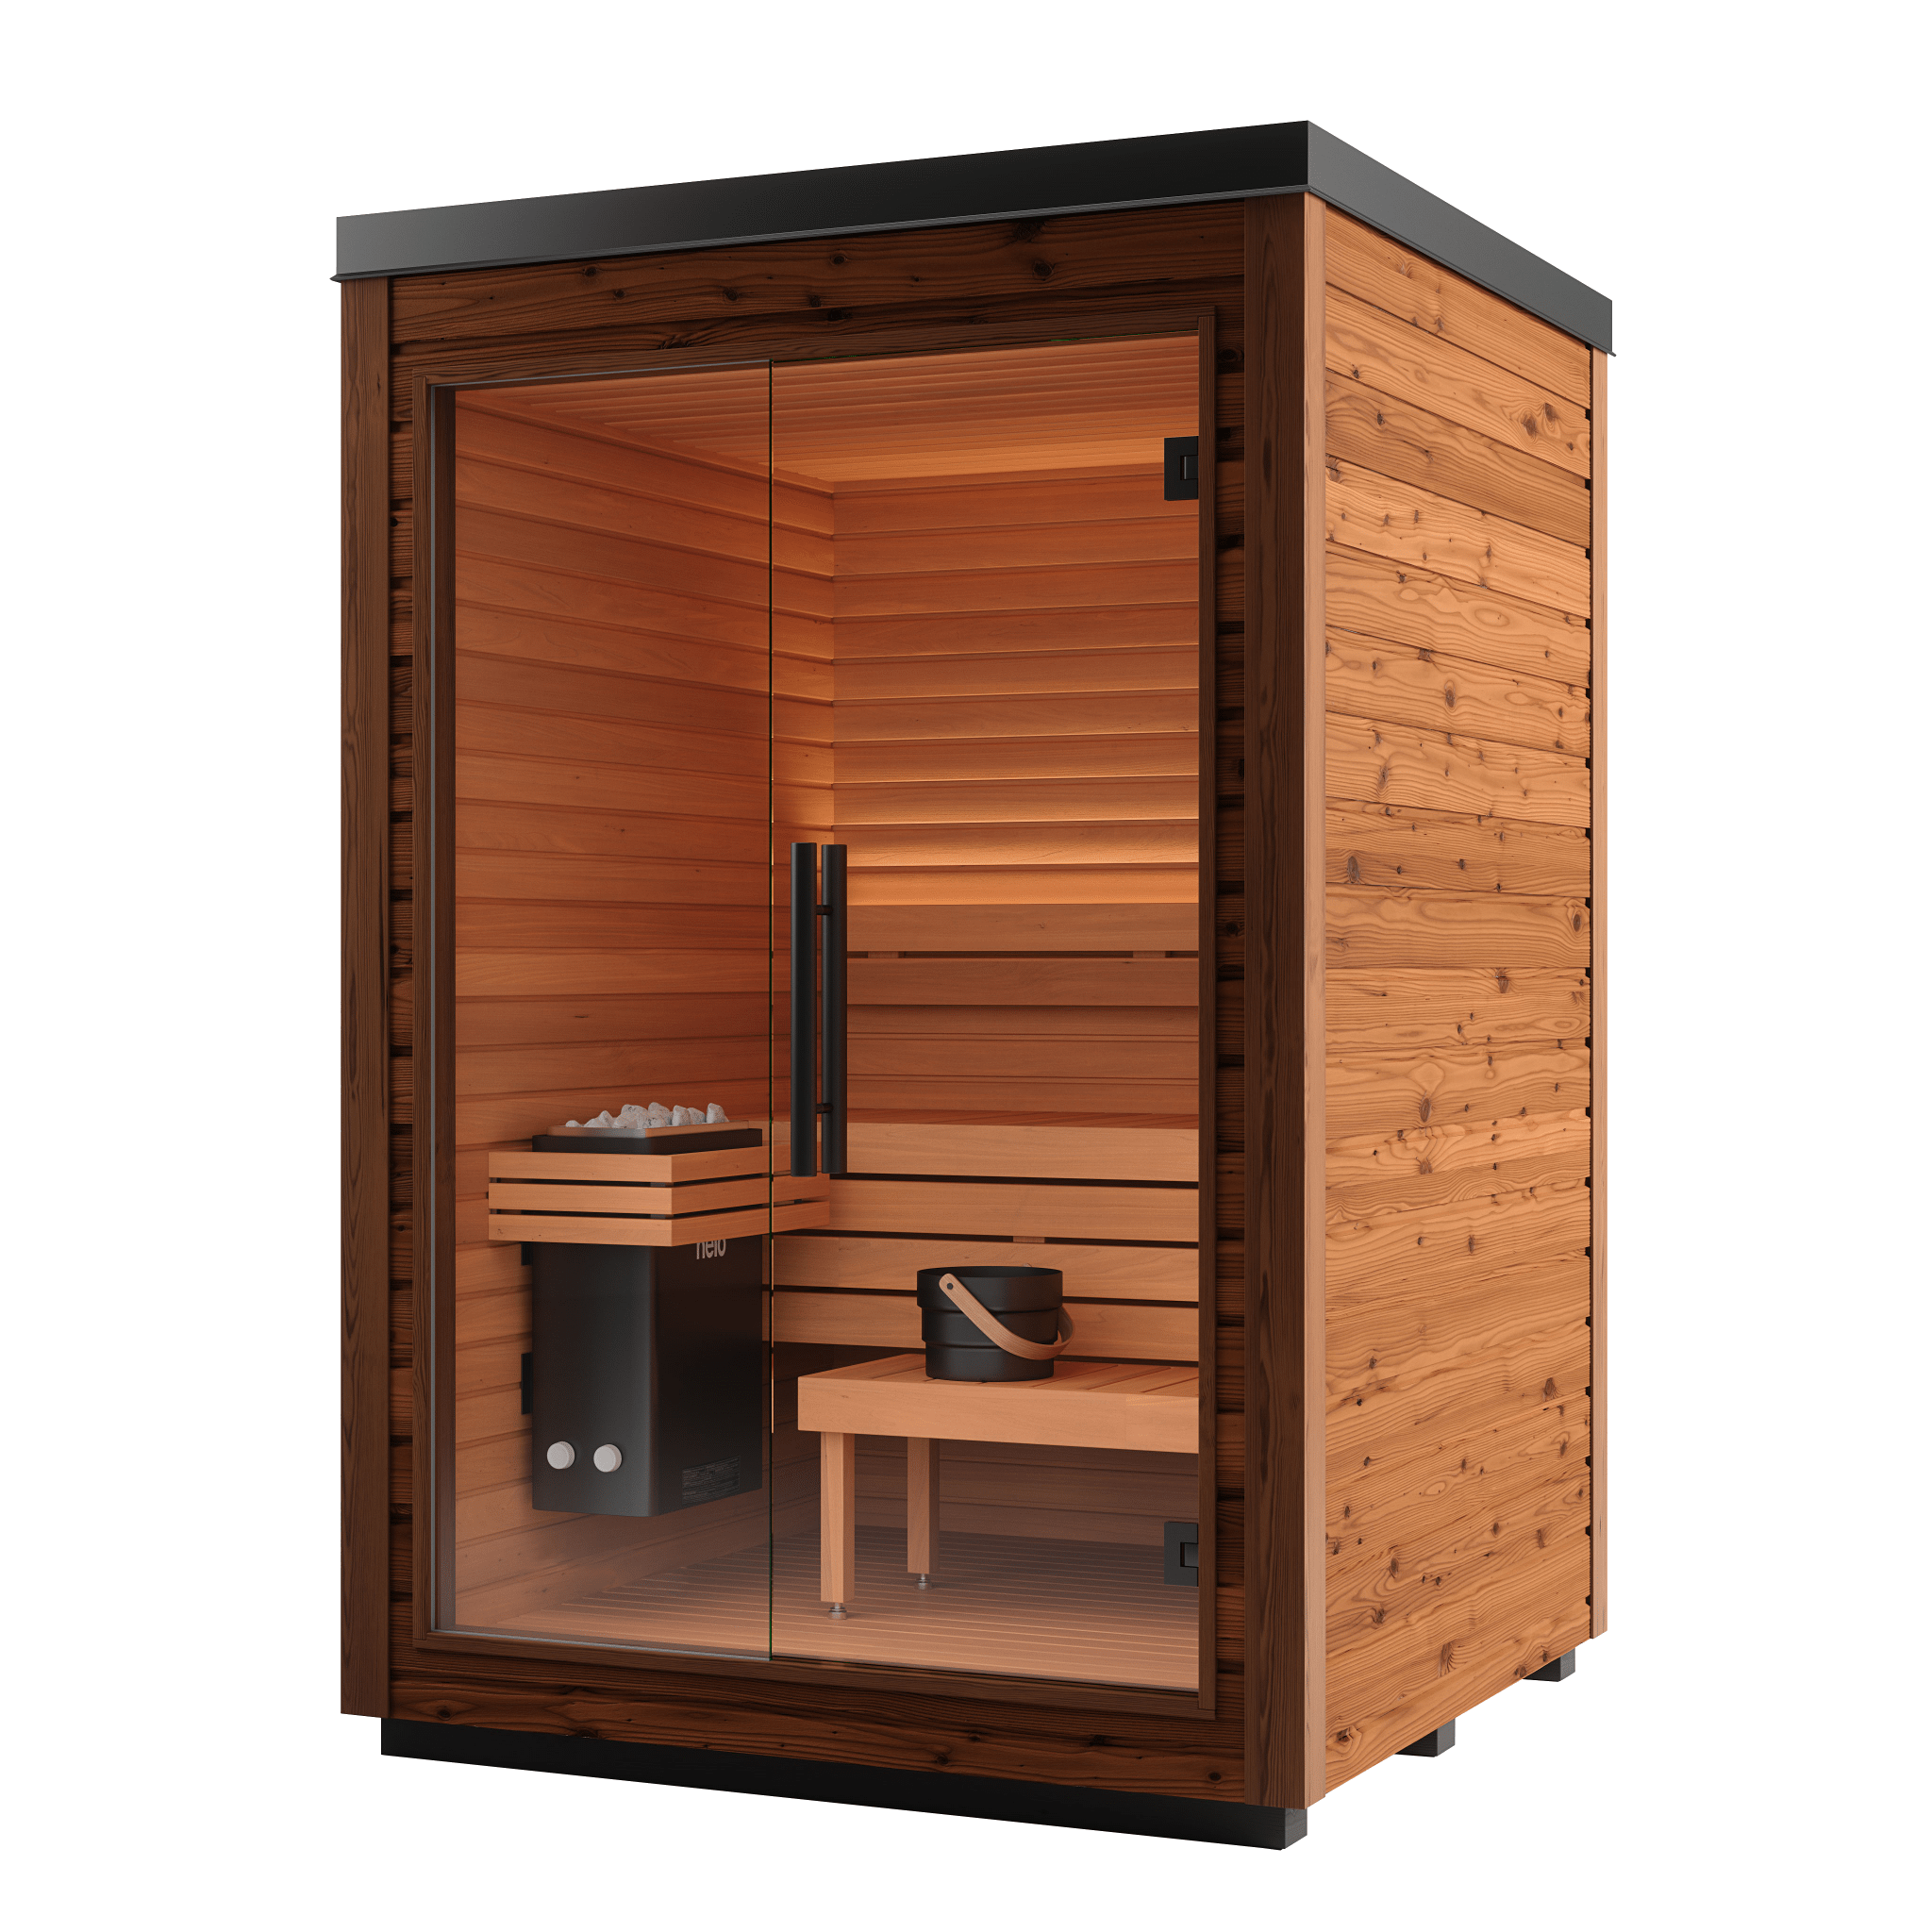 2 Person Home Sauna